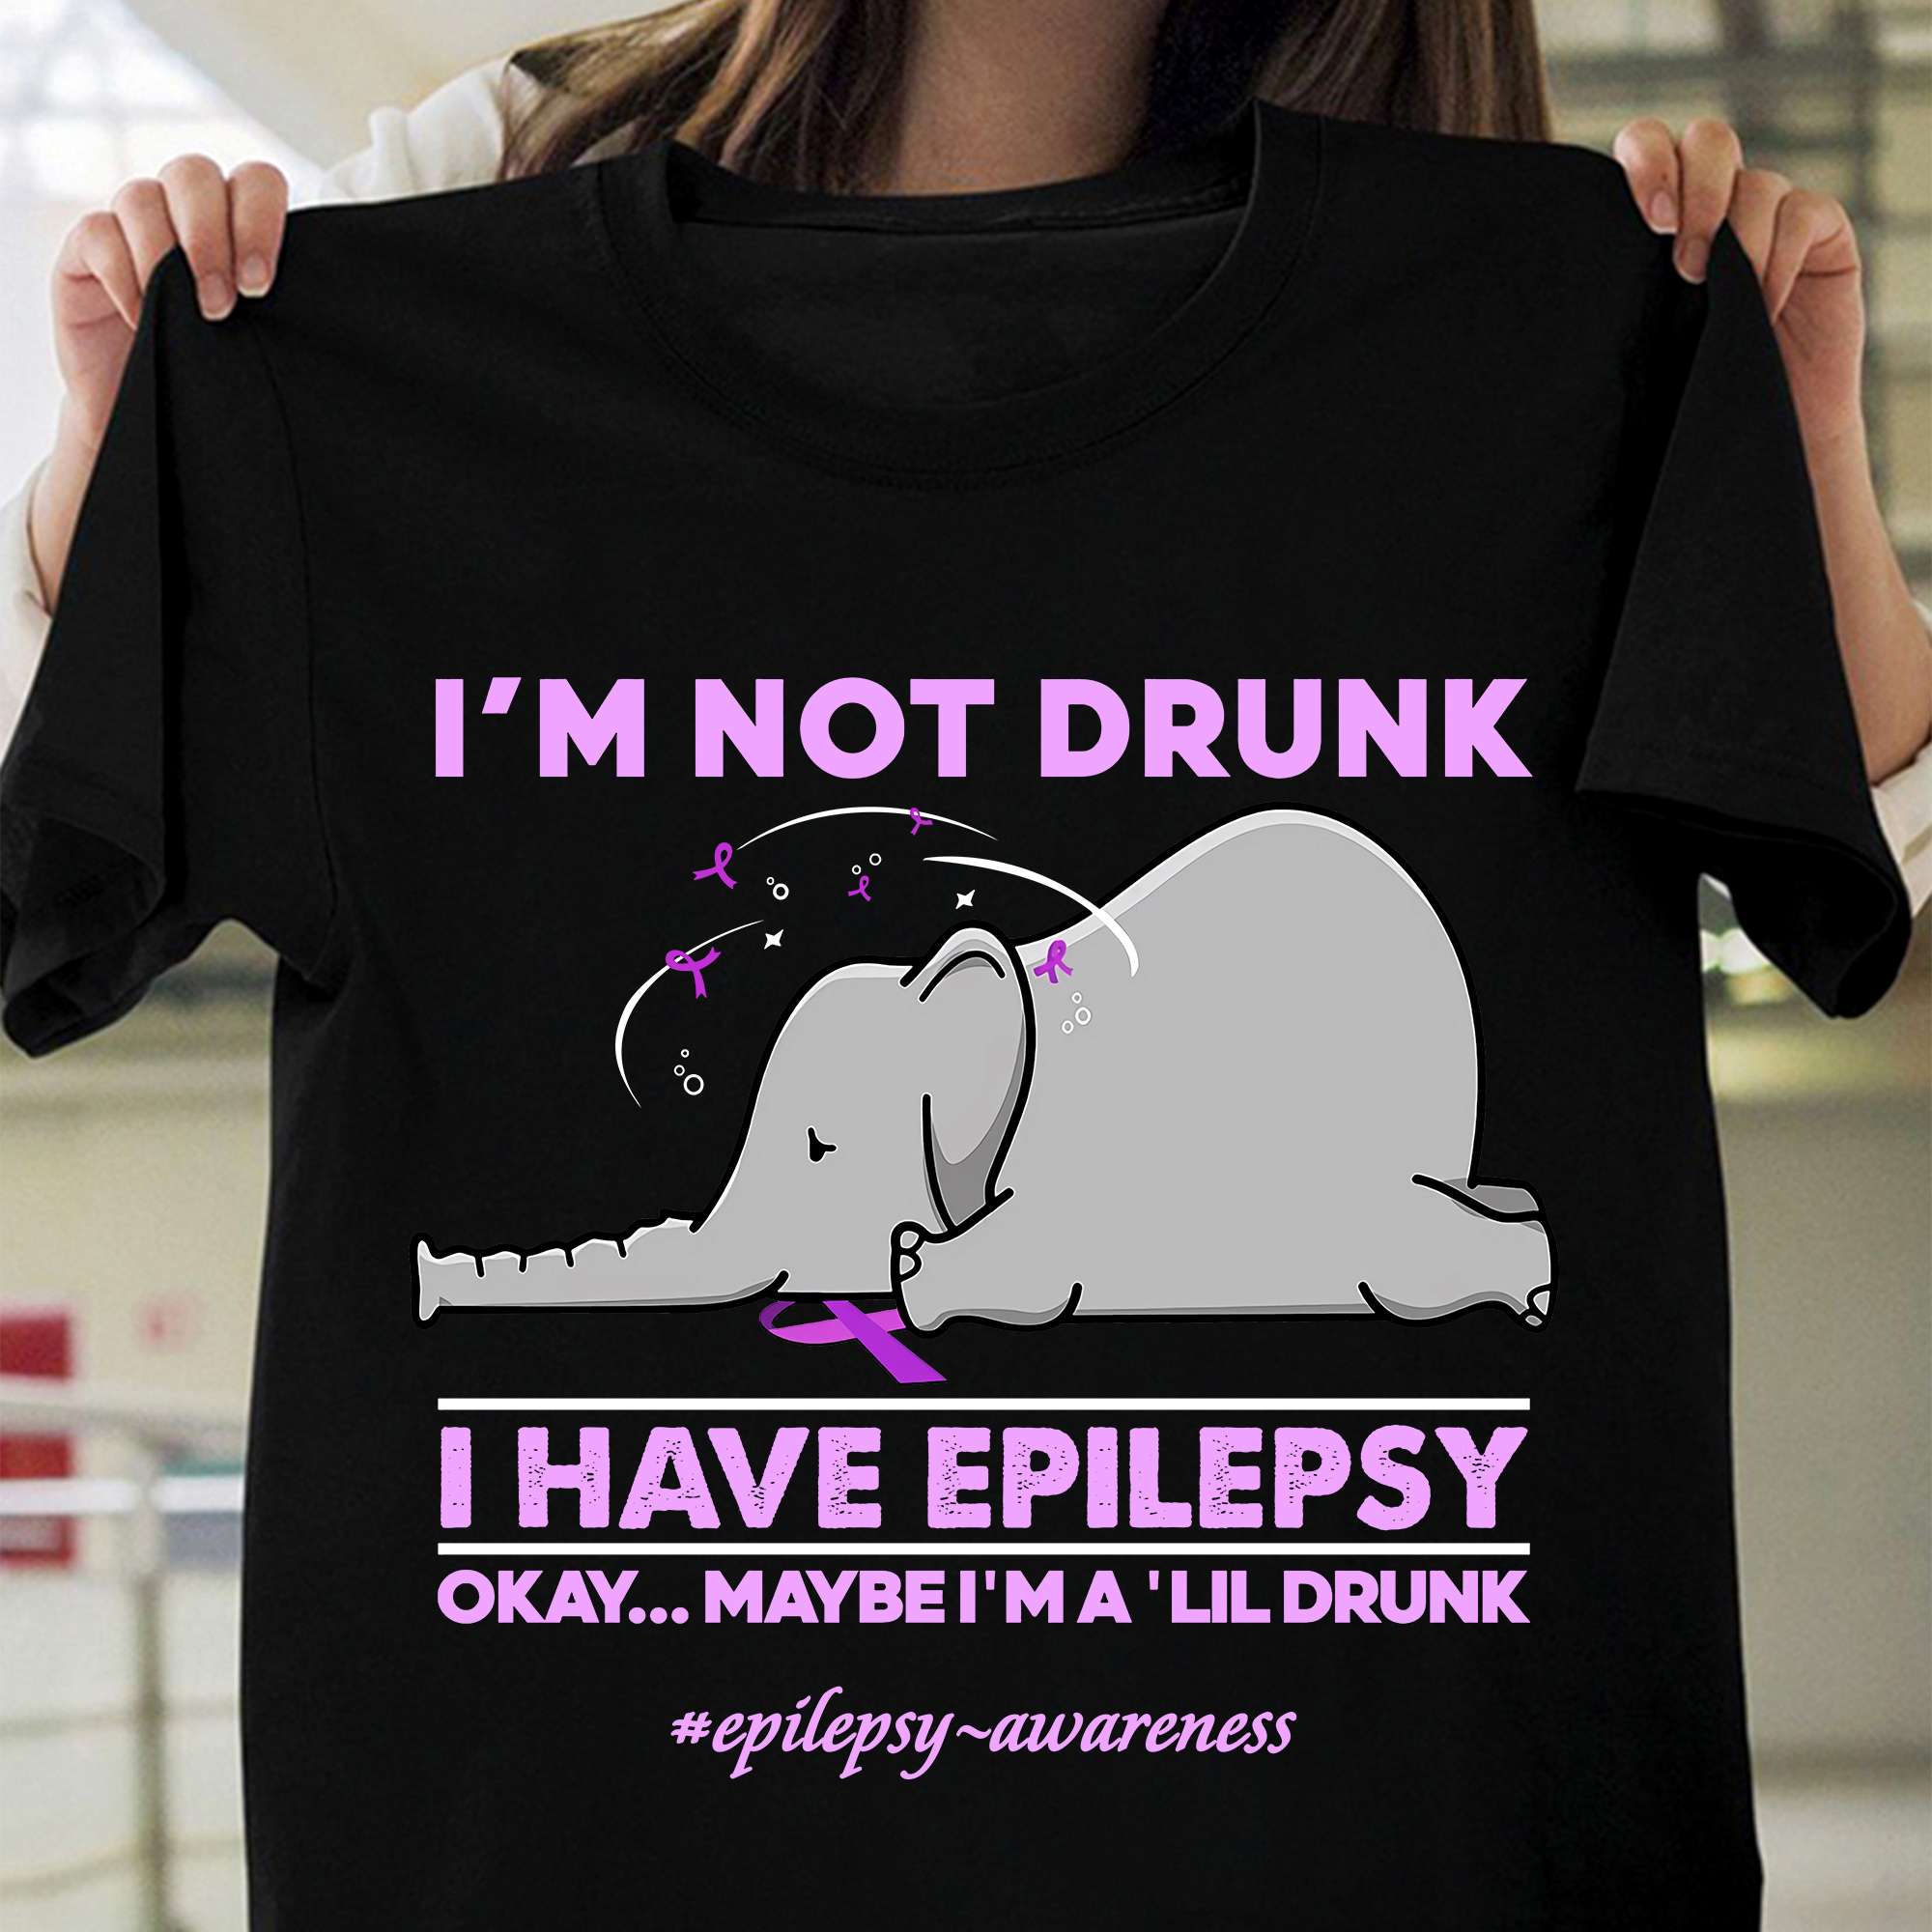 I'm not drunk I have epilepsy - Epilepsy awareness, epilepsy elephant